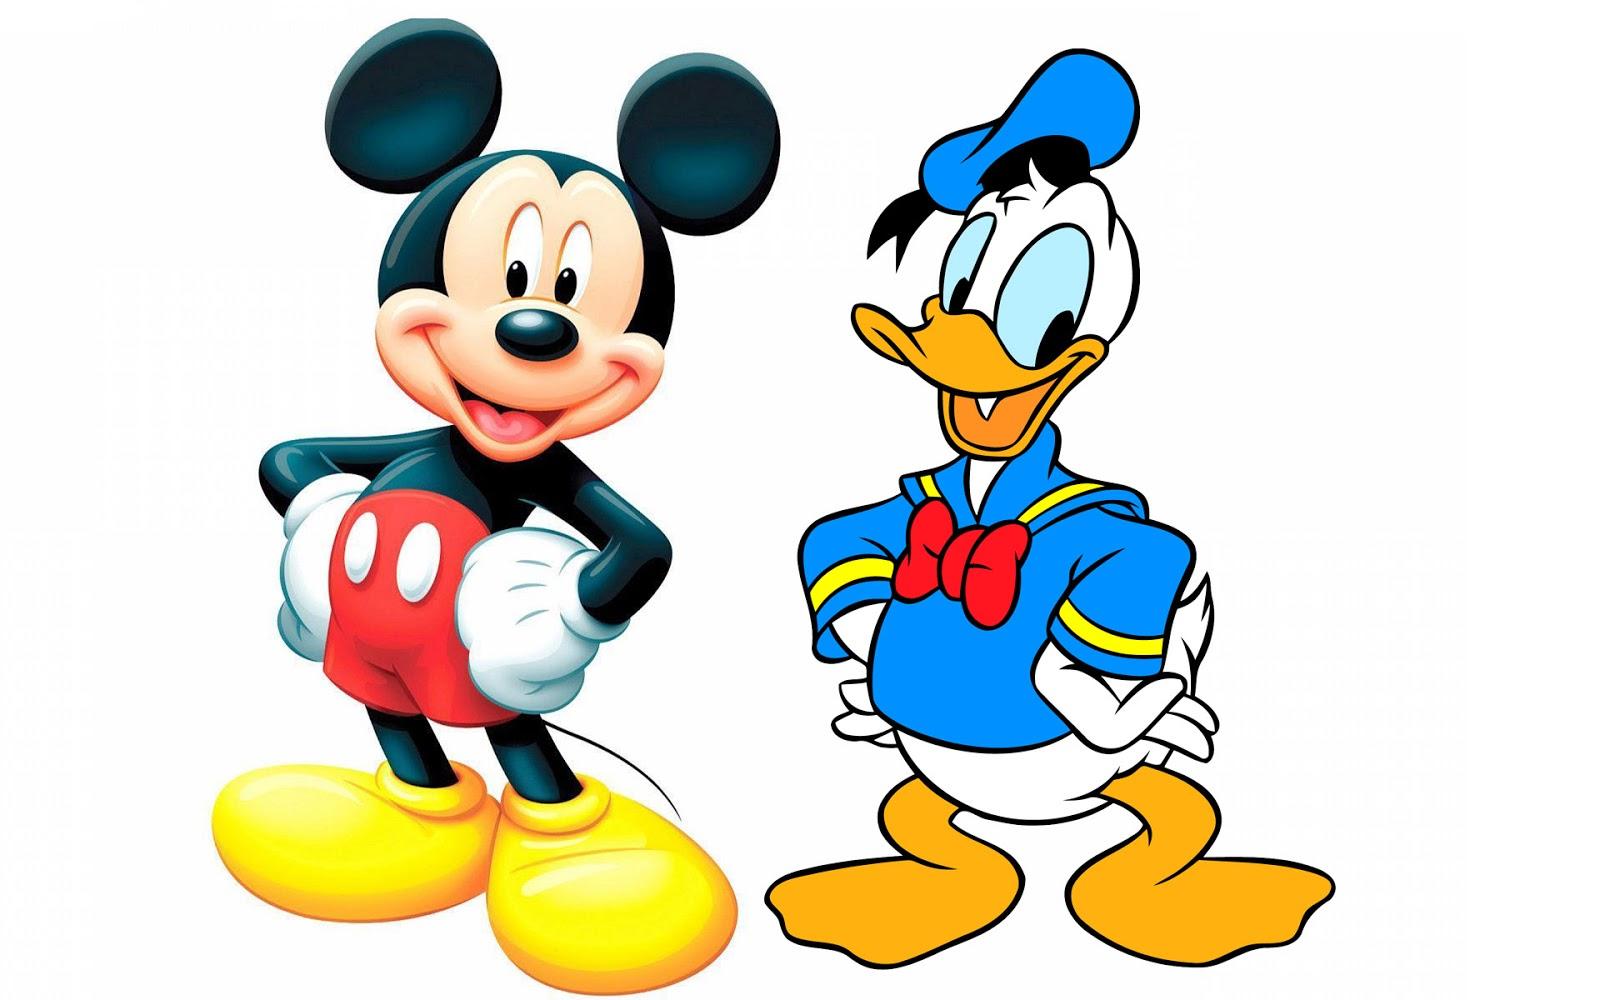  Donald Duck is Mickey's best friend